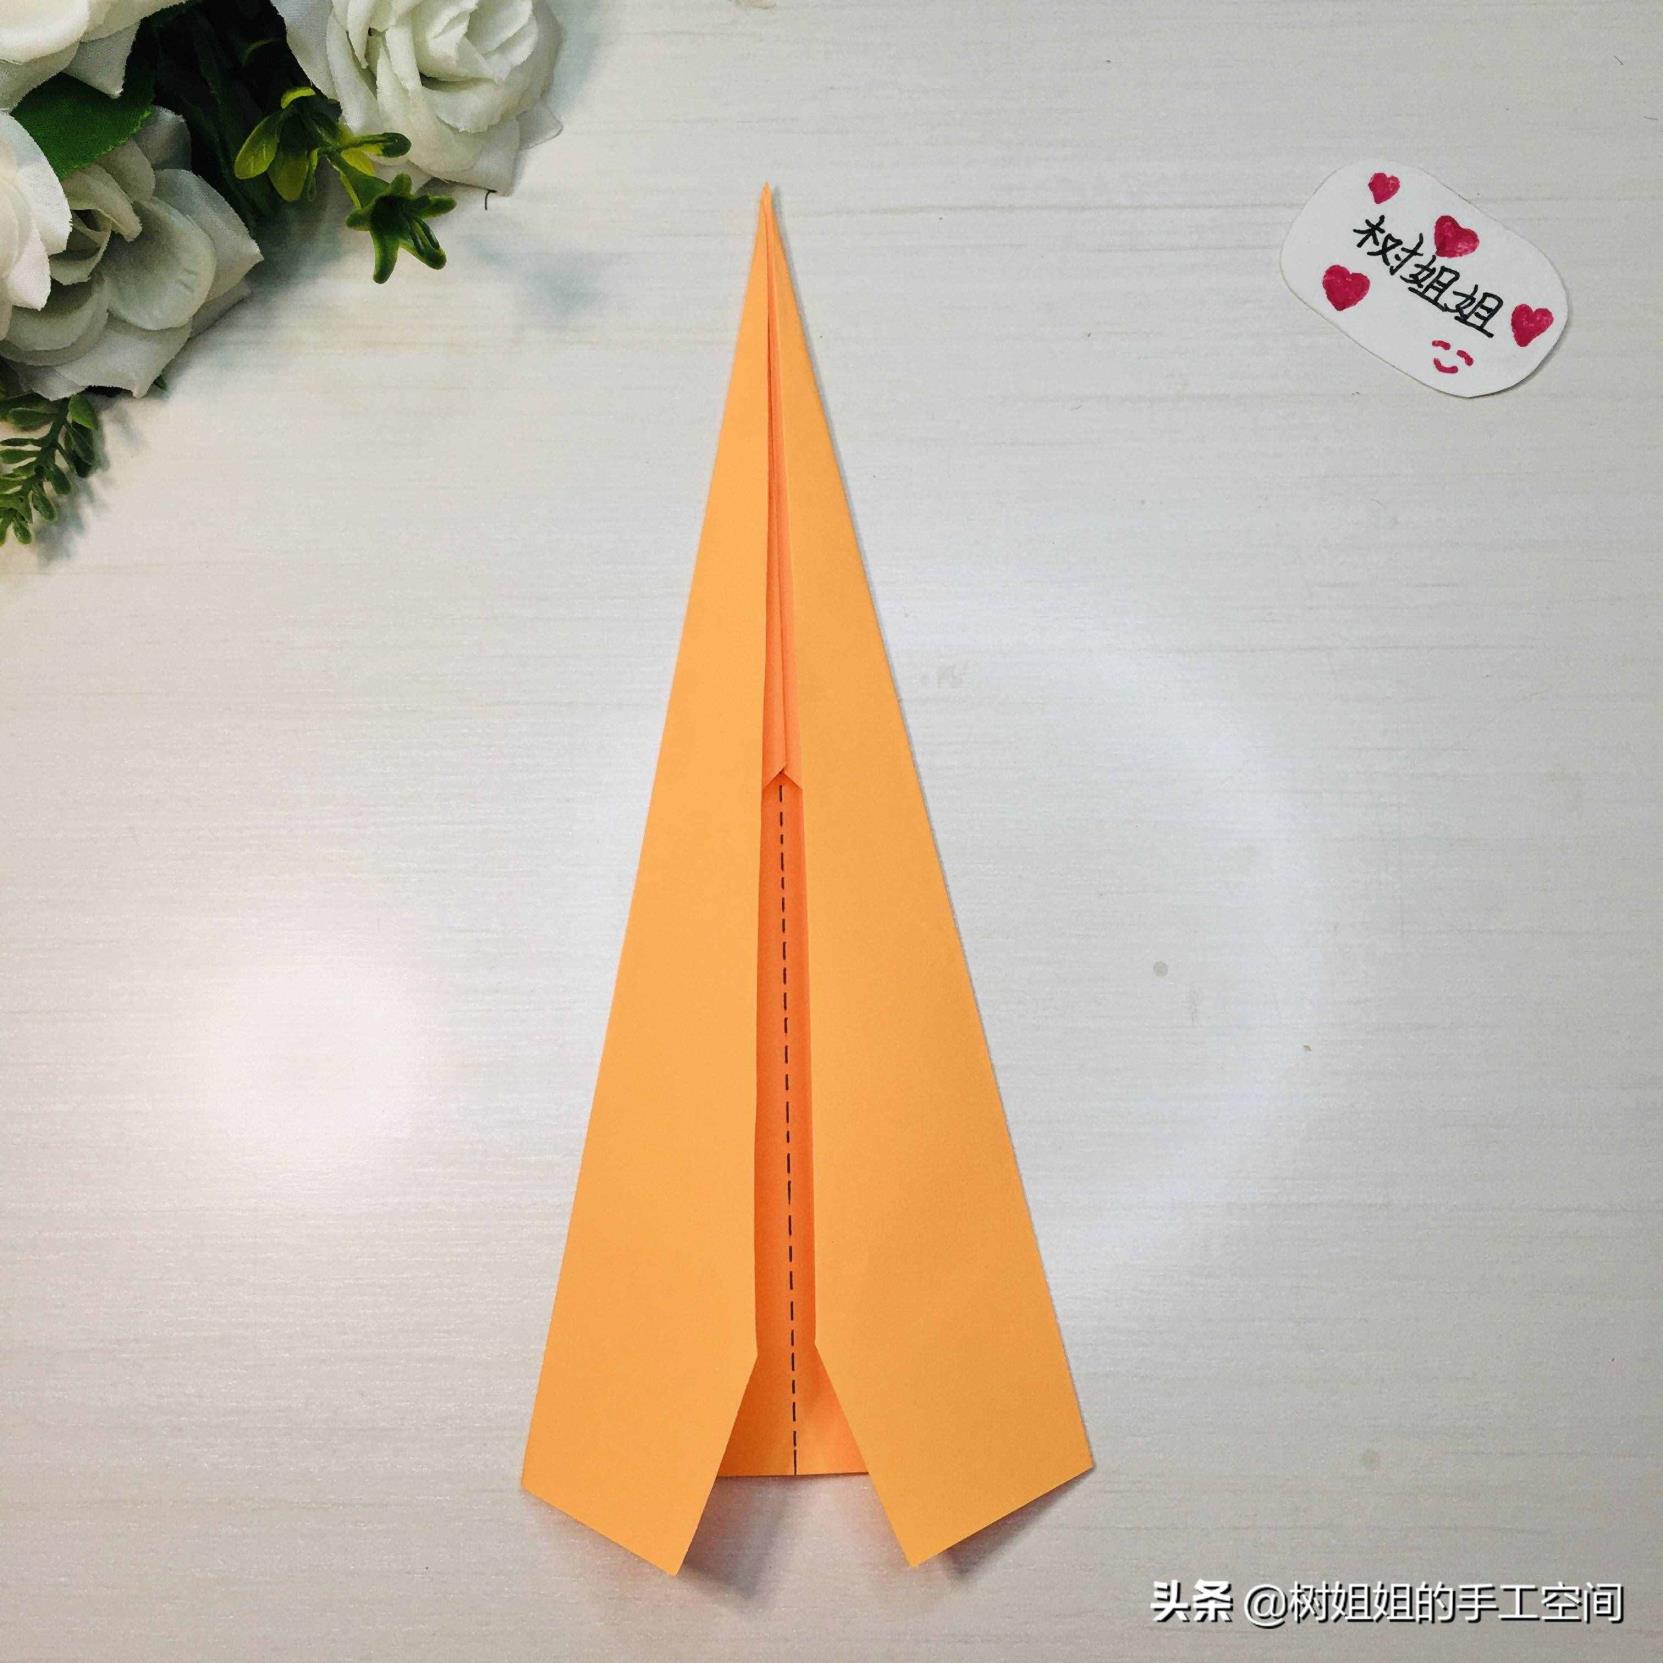 [国内怎么用纸飞机]在中国怎么用纸飞机